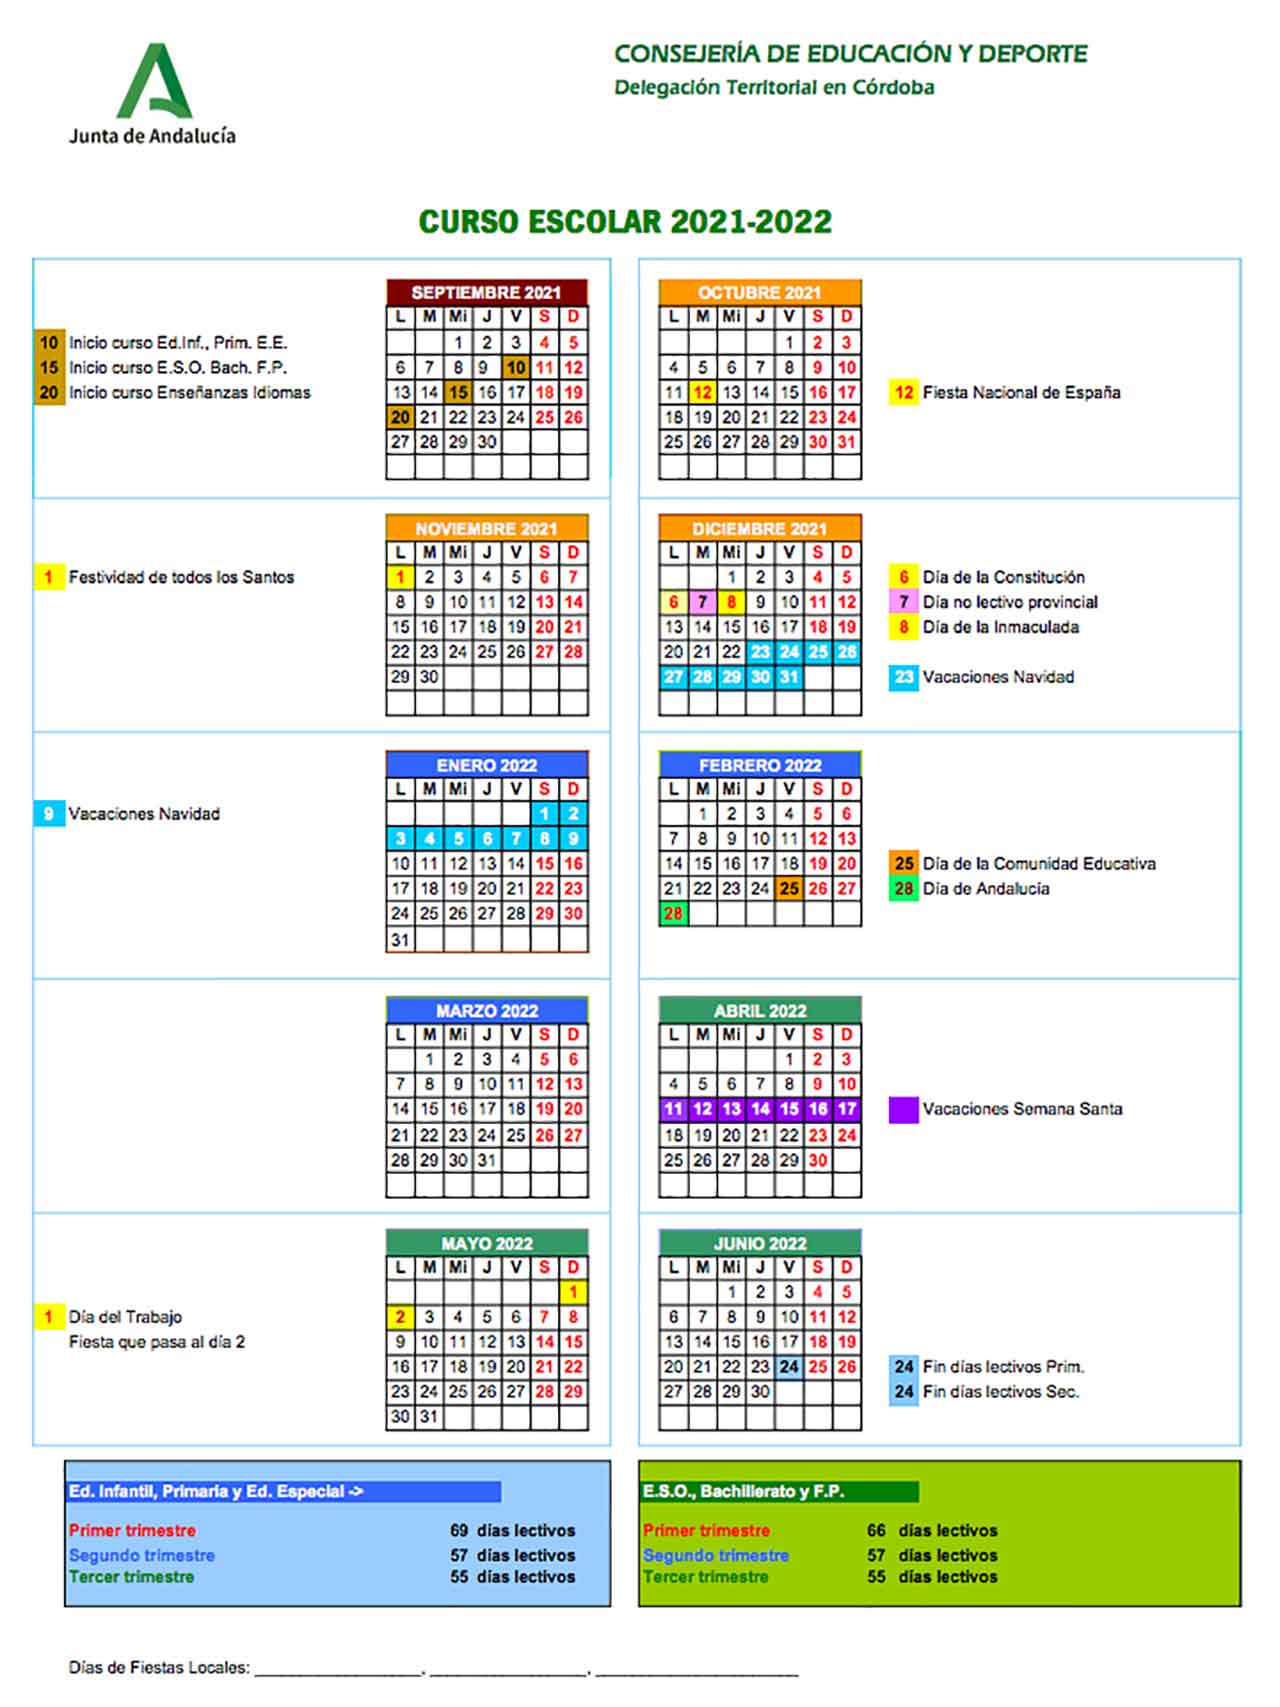 Calendario escolar Córdoba para el curso 2021-2022